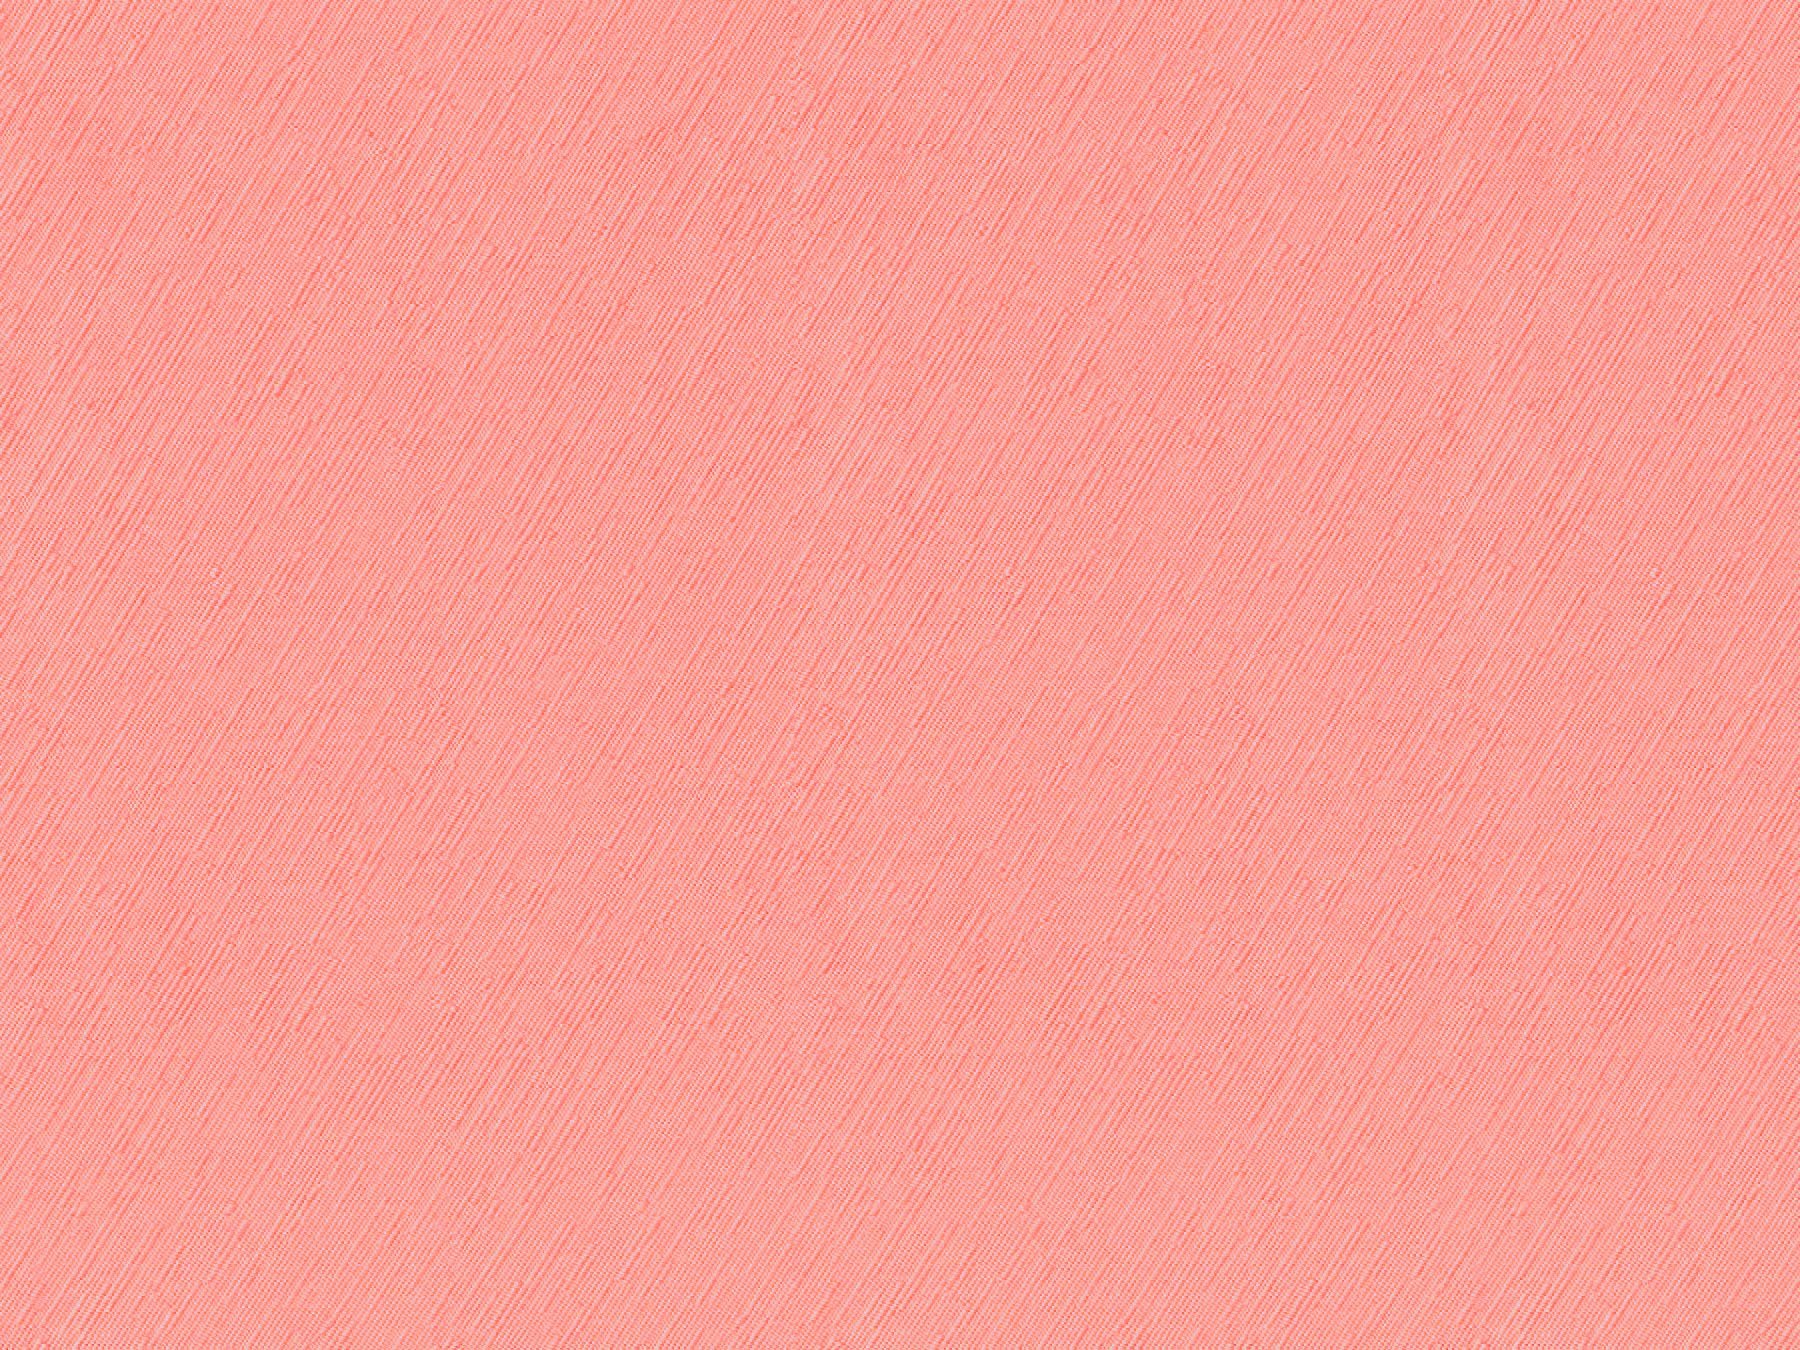 Розовый цвет тон. Светло розовый цвет. Светло коралловый. Персиковый цвет. Бледно-розовый цвет.